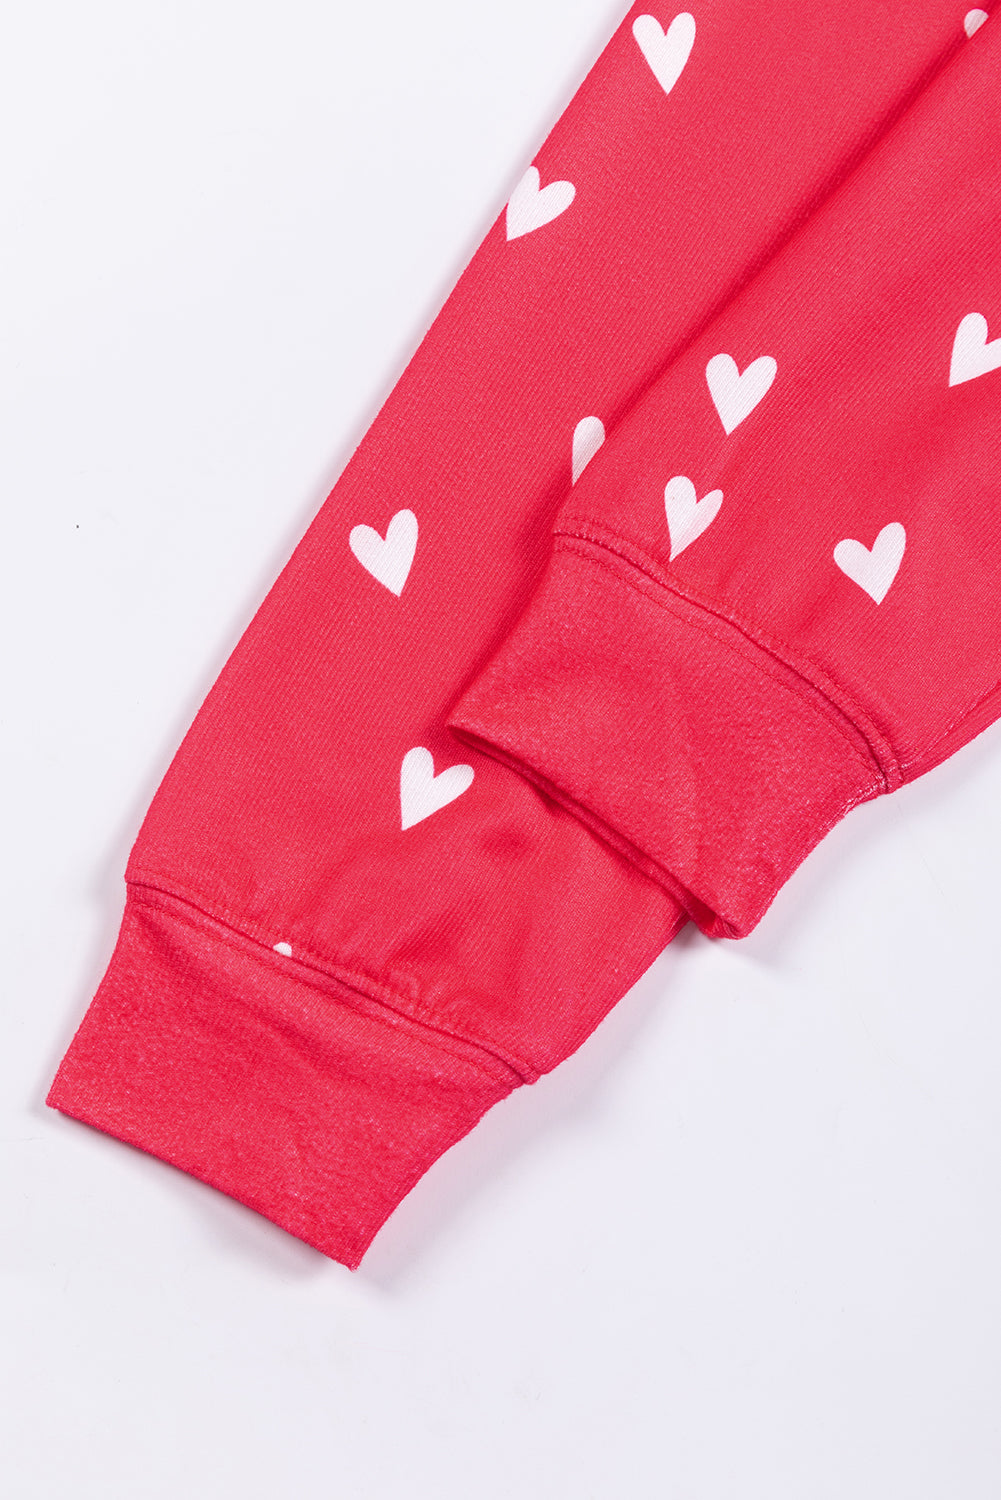 Ognjeno rdeči komplet hlač s potiskom srčkov za Valentinovo